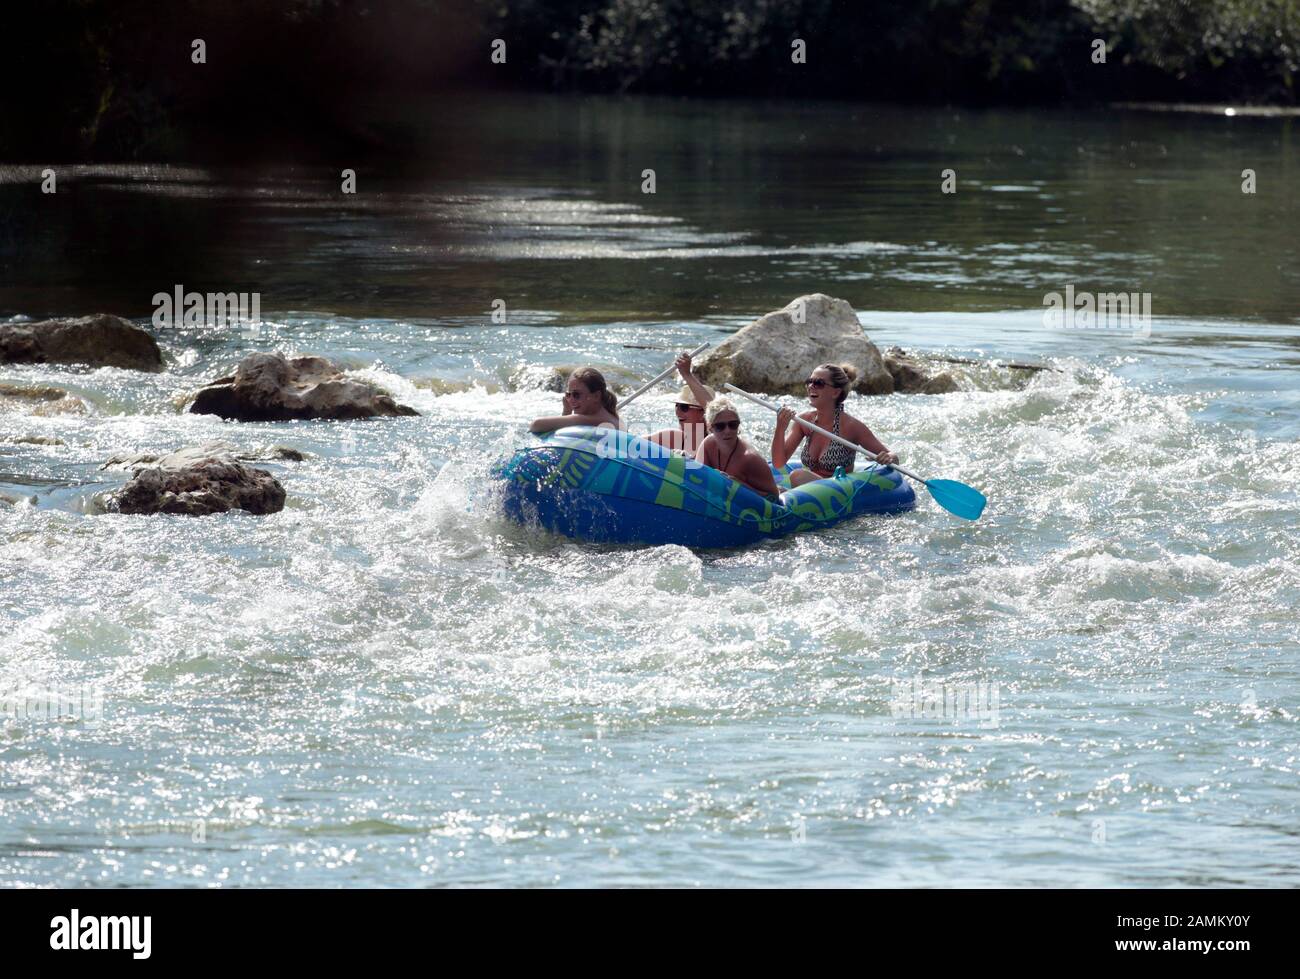 Ein Gummi-Schlauchboot überquert die neue Bodenschwelle im Amper River  neben der Wasserrettungsstation bei Grafrath. [Automatisierte Übersetzung]  Stockfotografie - Alamy